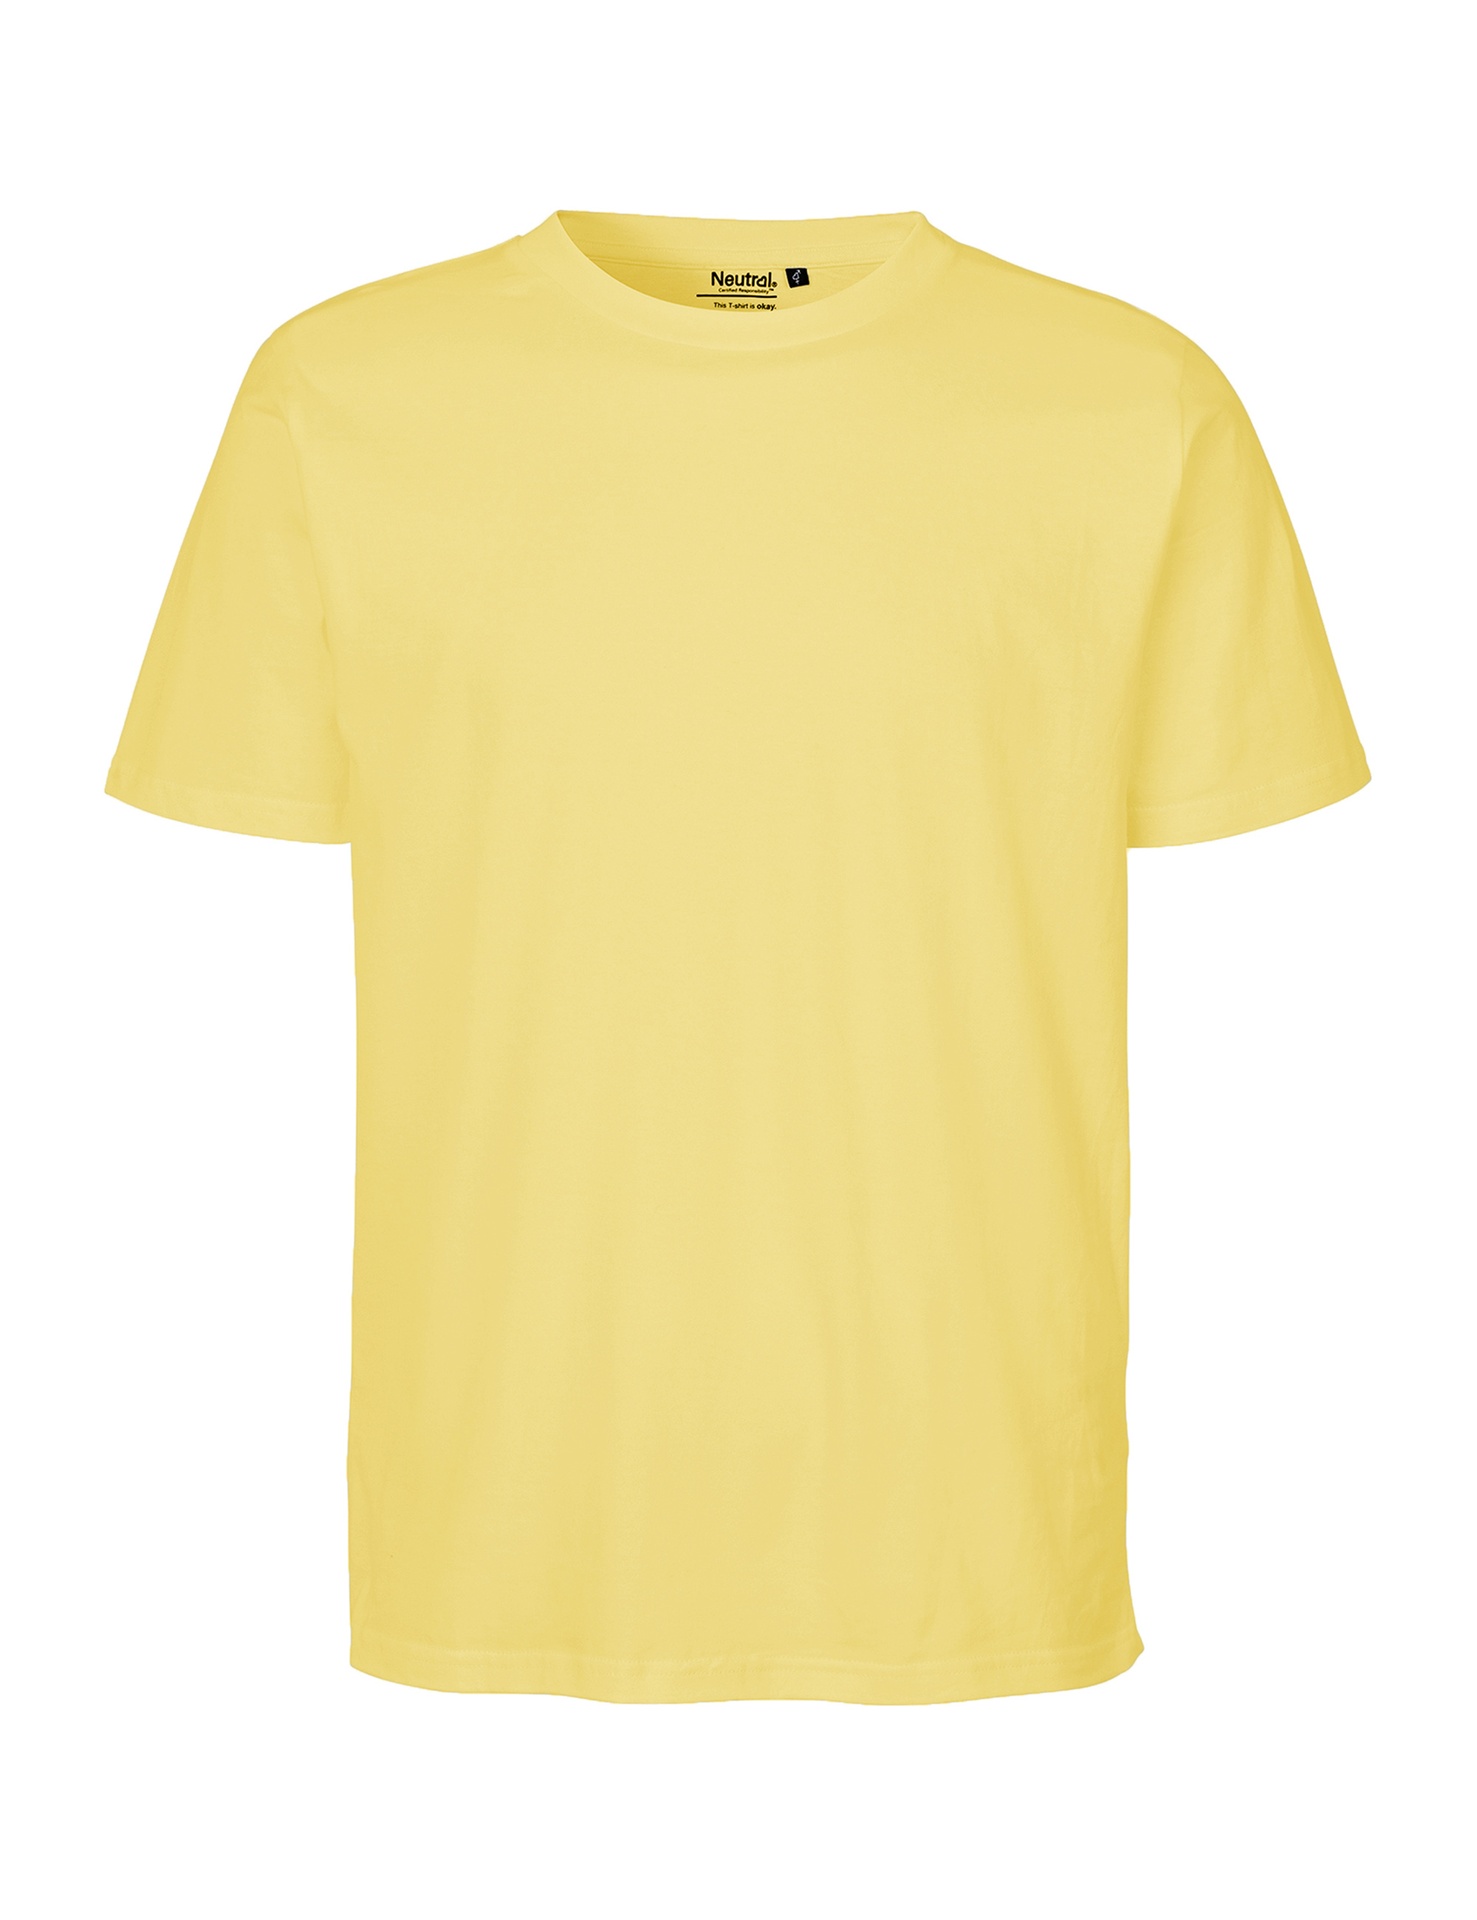 [PR/06677] Unisex Regular T-Shirt (3XL, Charcoal 06)